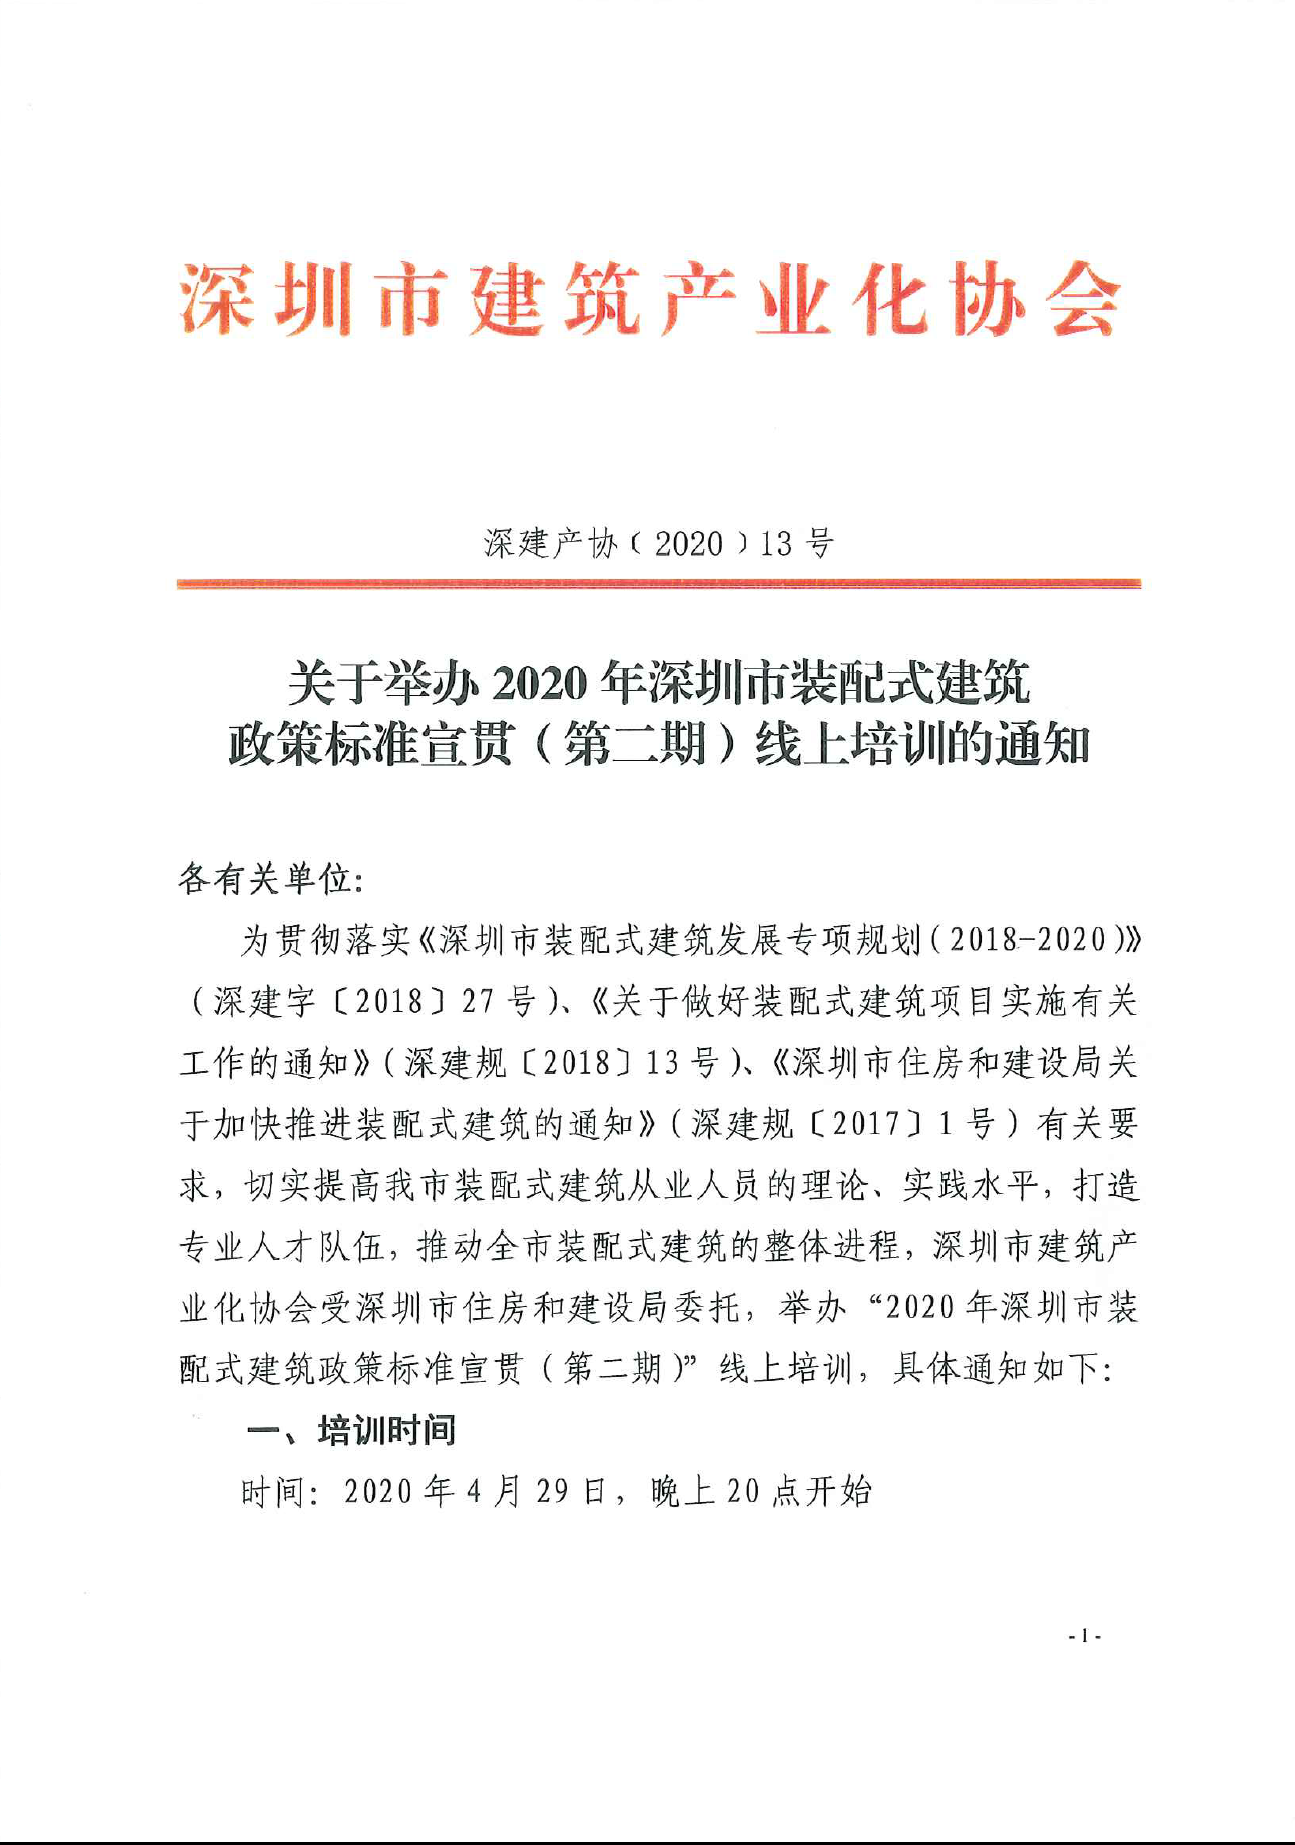 2020年深圳装配式建筑政策标准宣贯（第二期）线上培训报名啦